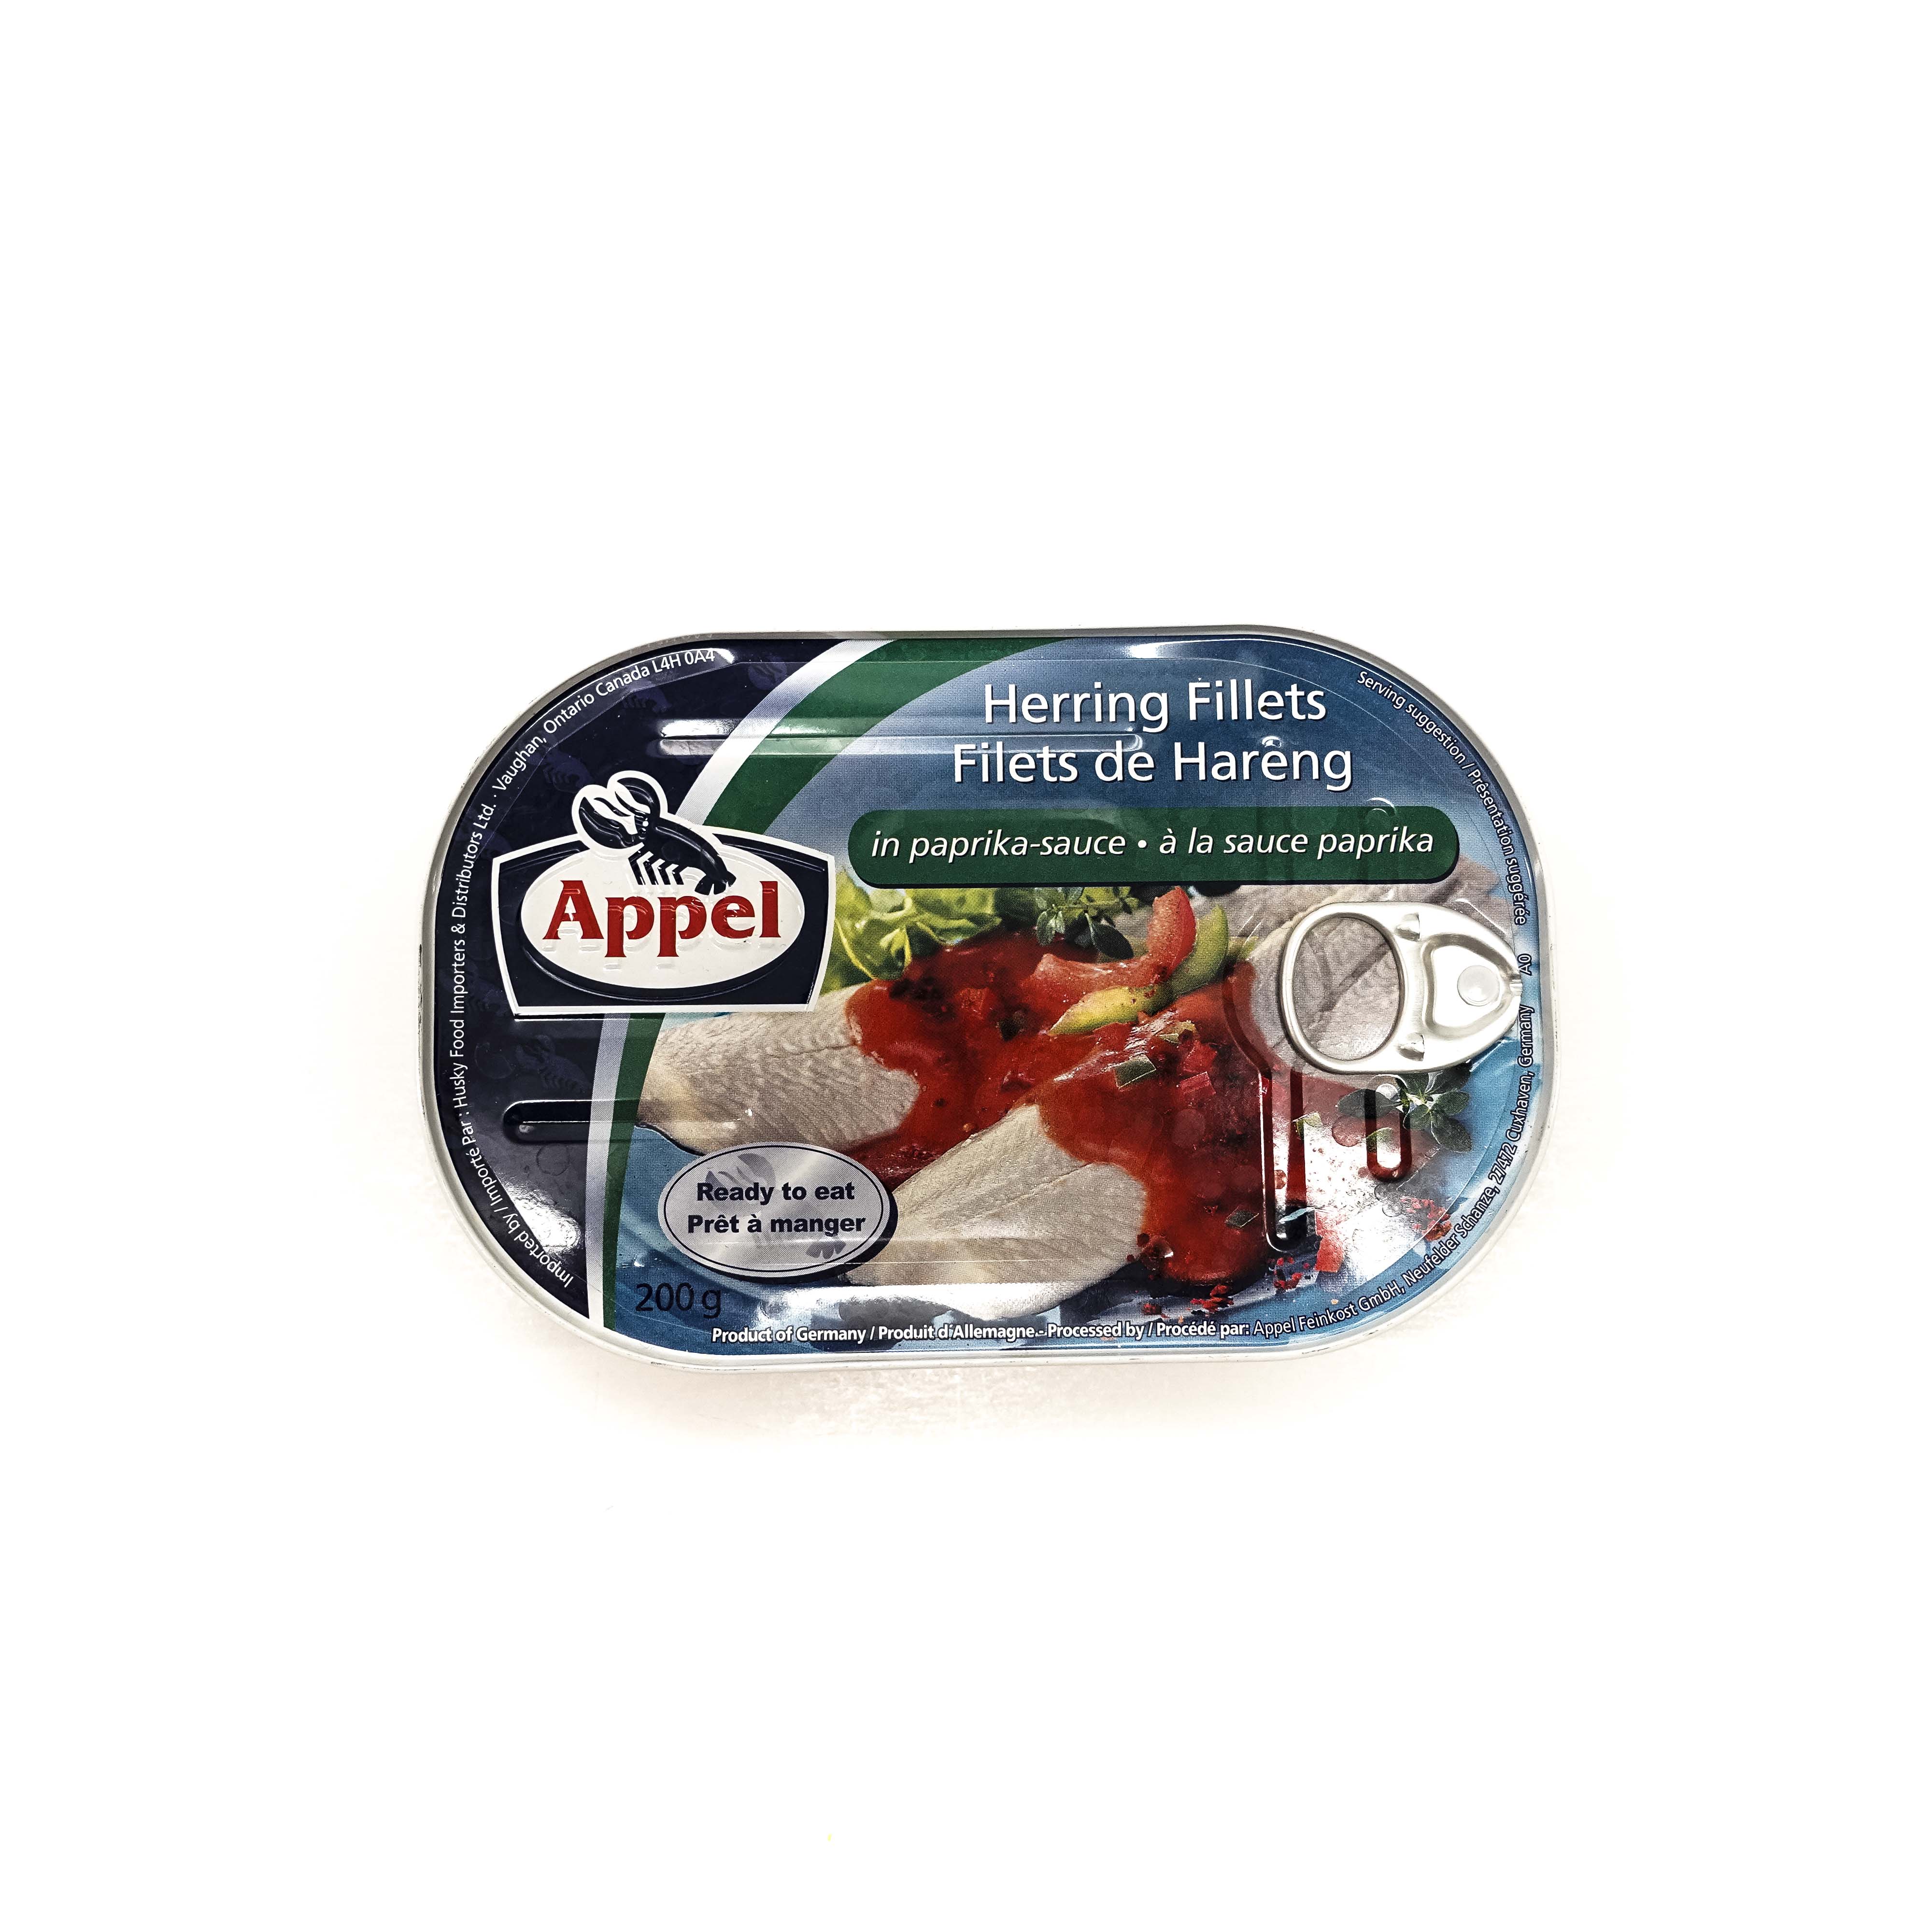 Appel Herring Fillets in Paprika Sauce